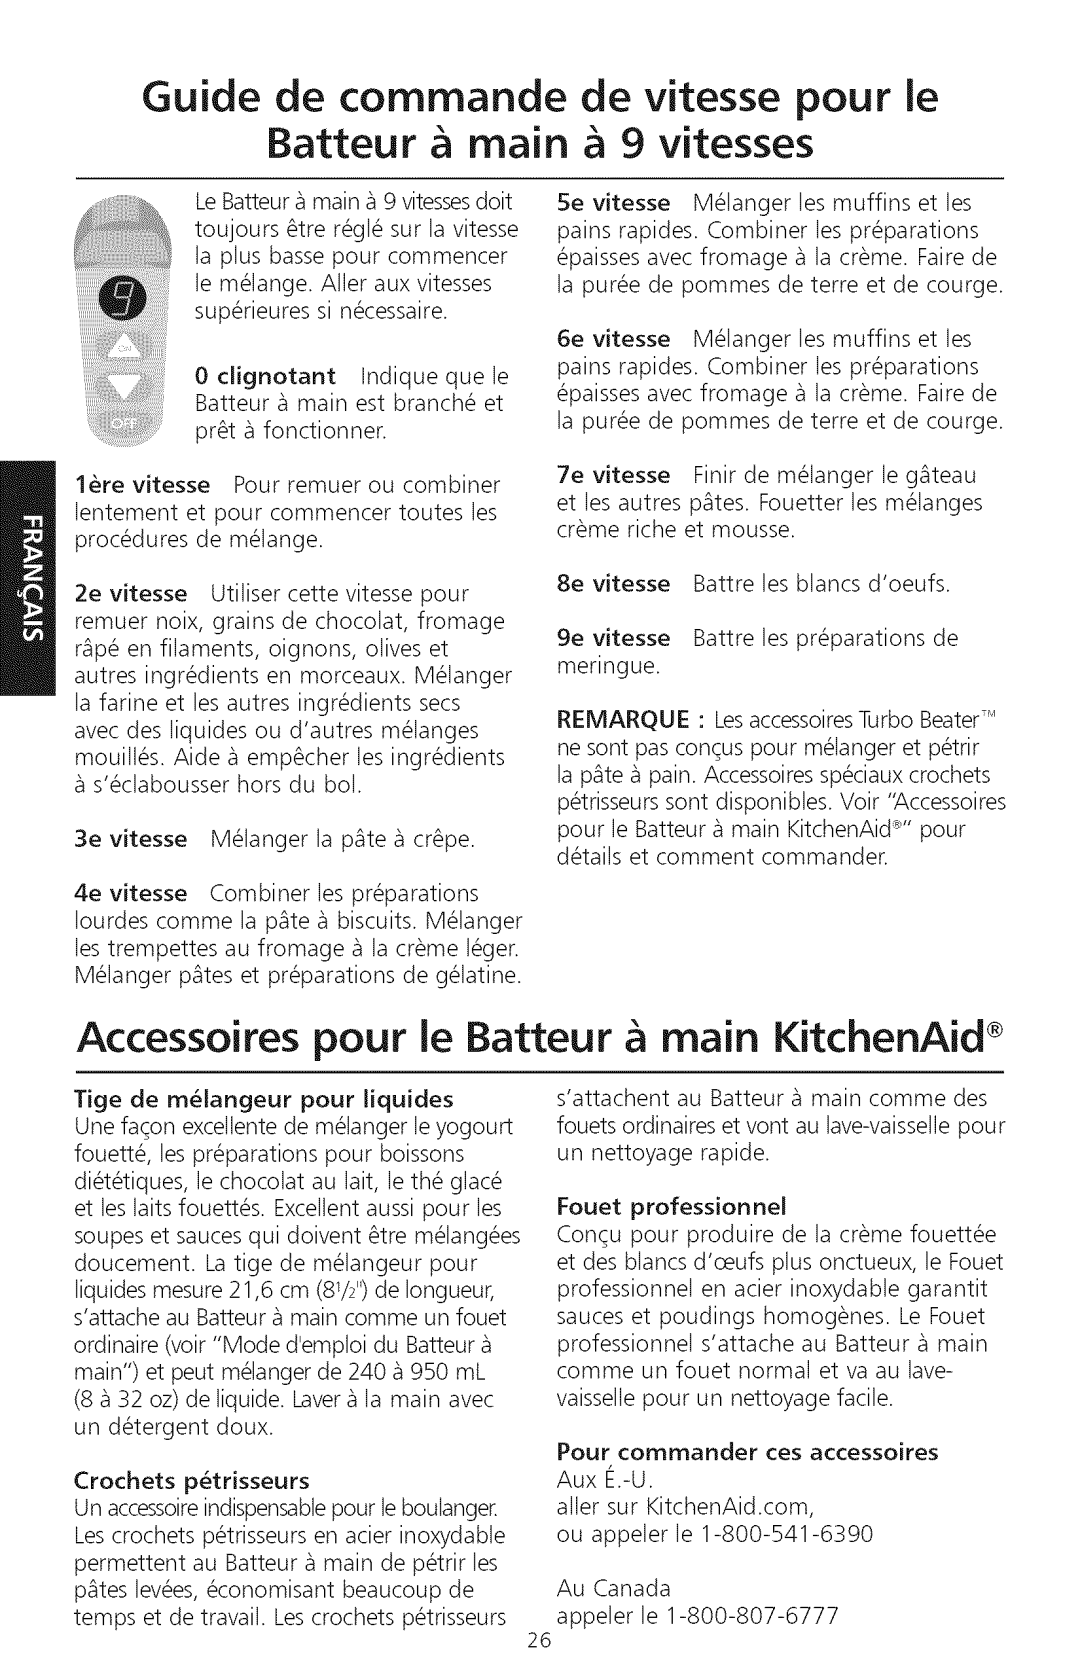 KitchenAid KHM920, KHM720 manual Guide de commande de vitesse pour ie Batteur main 9 vitesses 